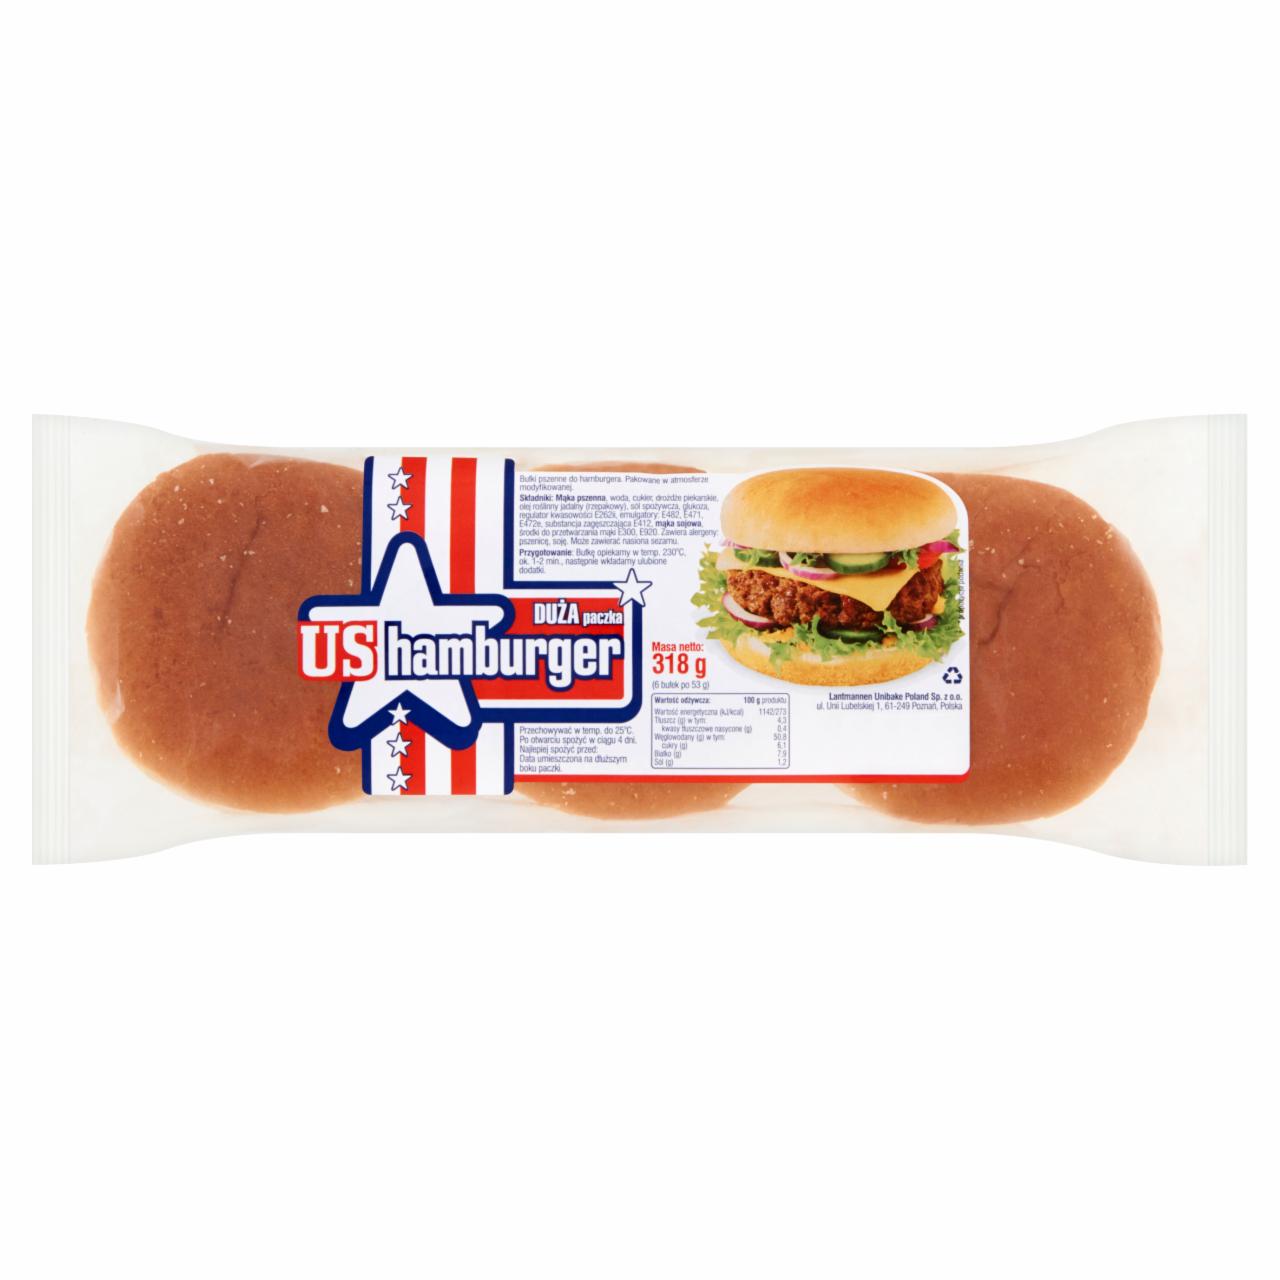 Zdjęcia - US Hamburger Bułki pszenne do hamburgerów 318 g (6 sztuk)